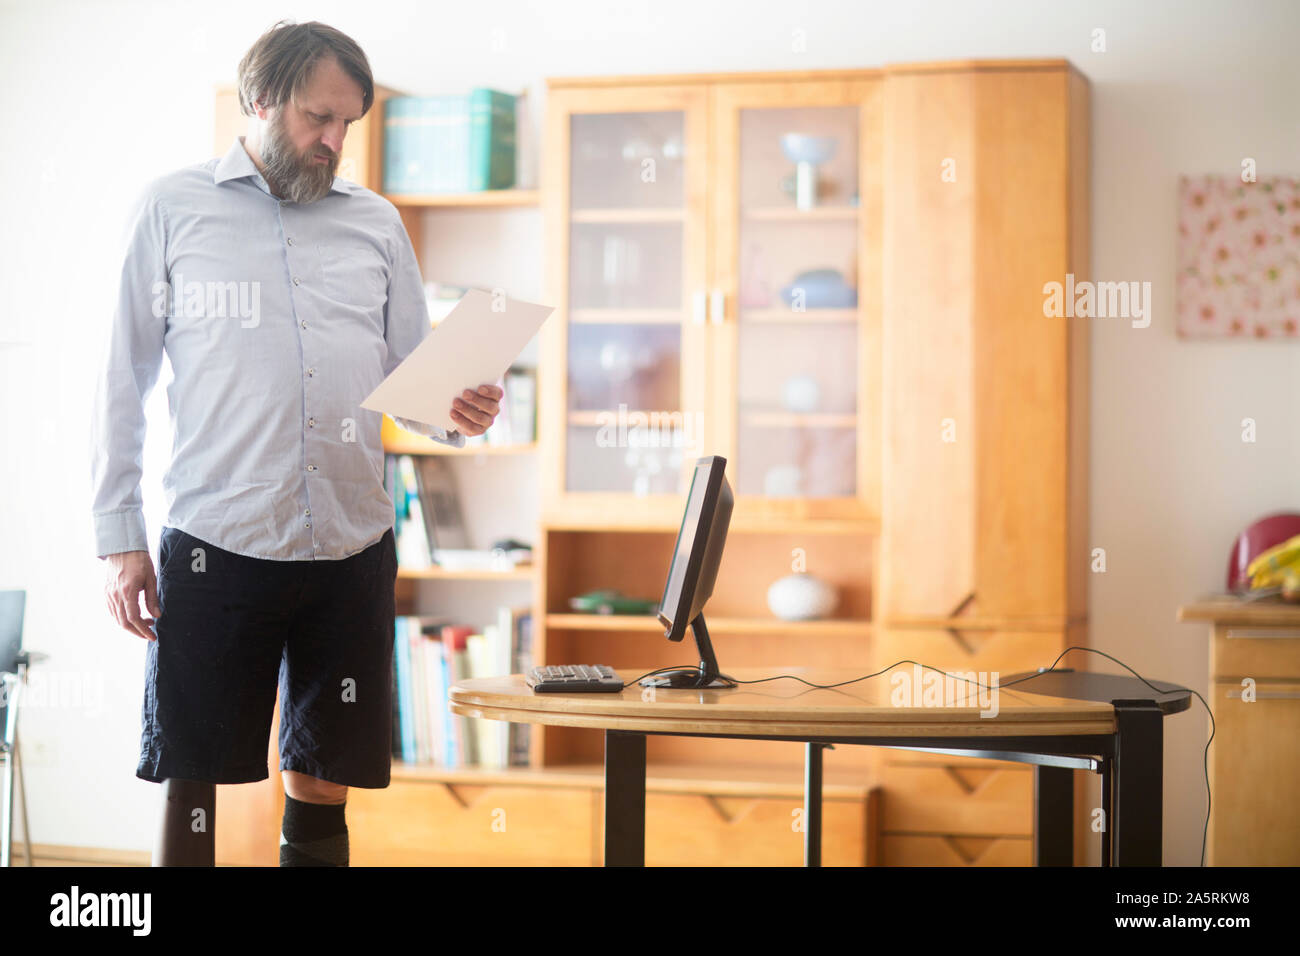 Älterer Mann mit Beinprothese zu Hause arbeiten mit Laptop